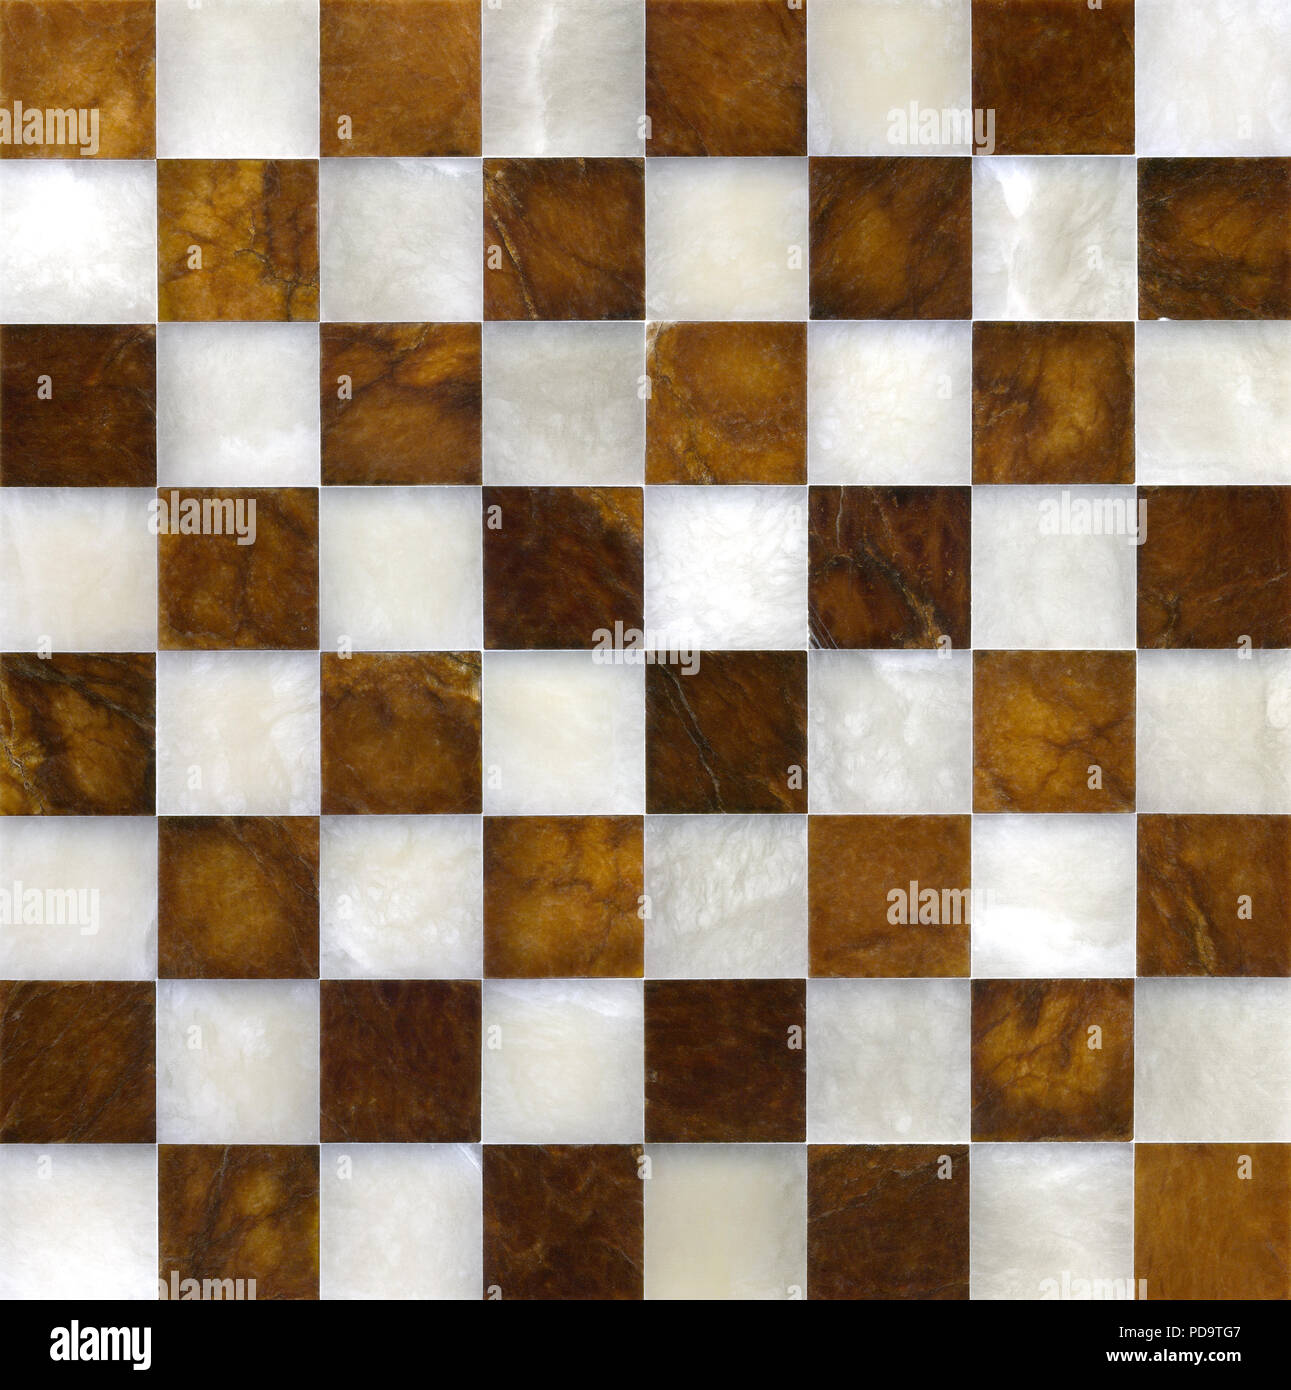 Tablero de ajedrez de mármol fotografías e imágenes de alta resolución -  Alamy